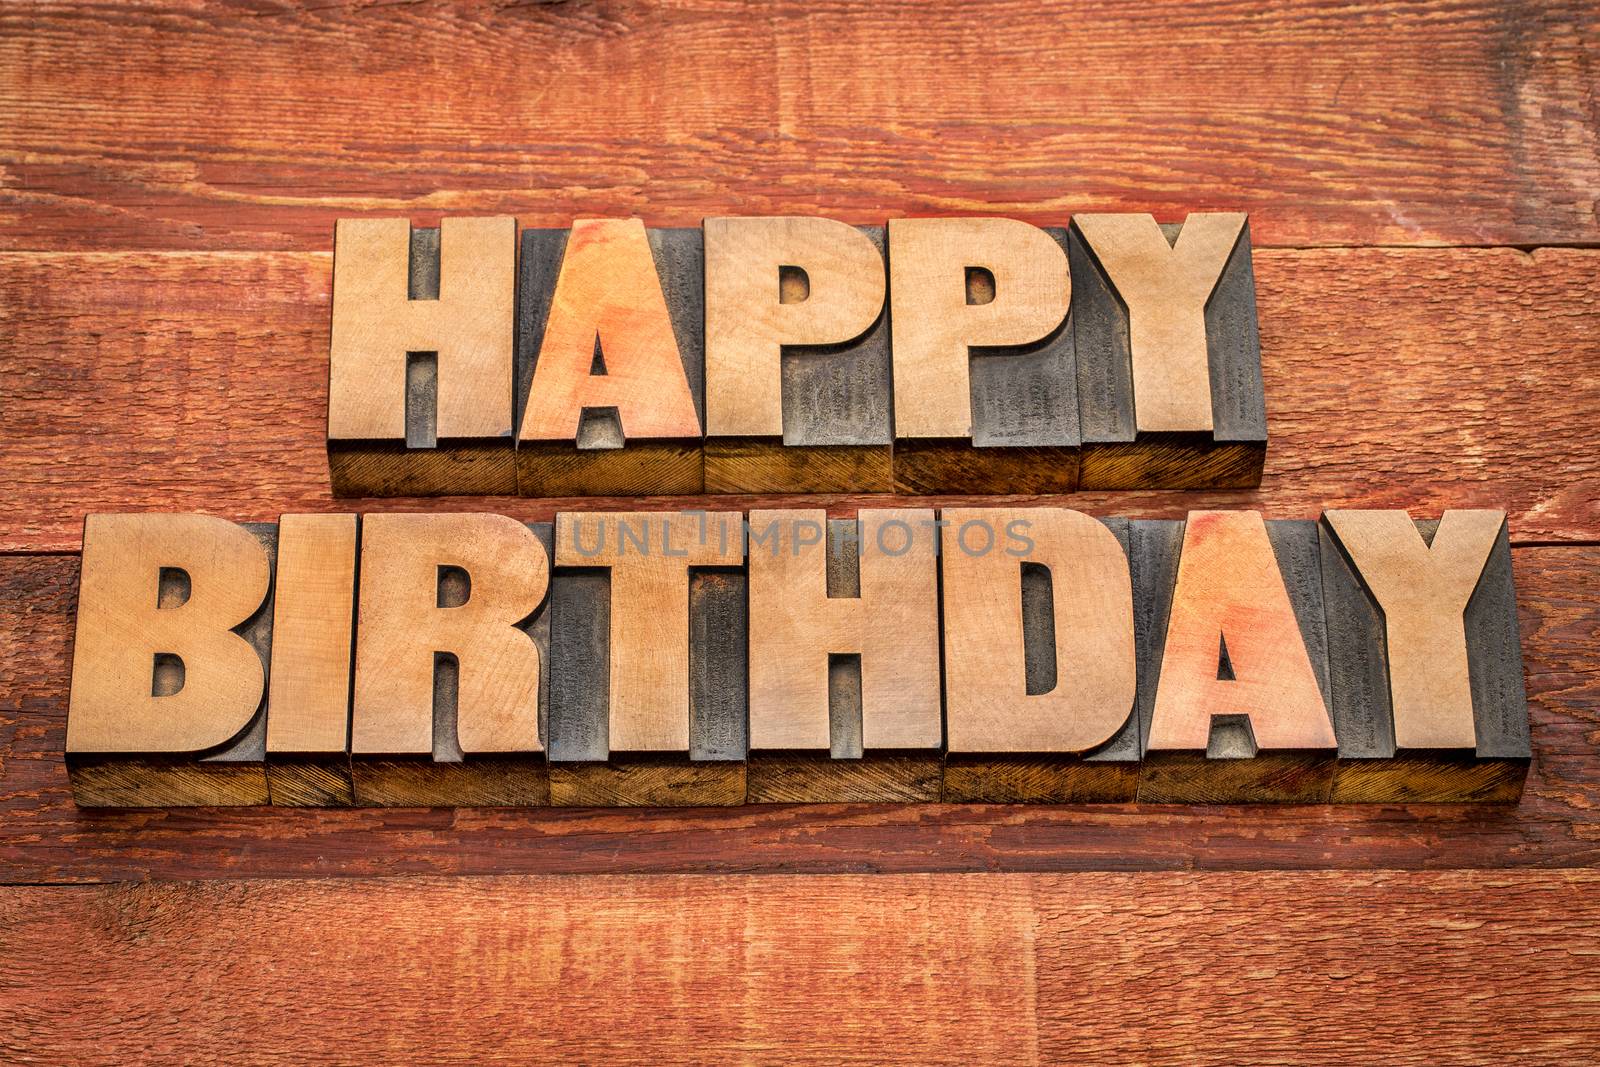 Happy Birthday greetings in wood type by PixelsAway